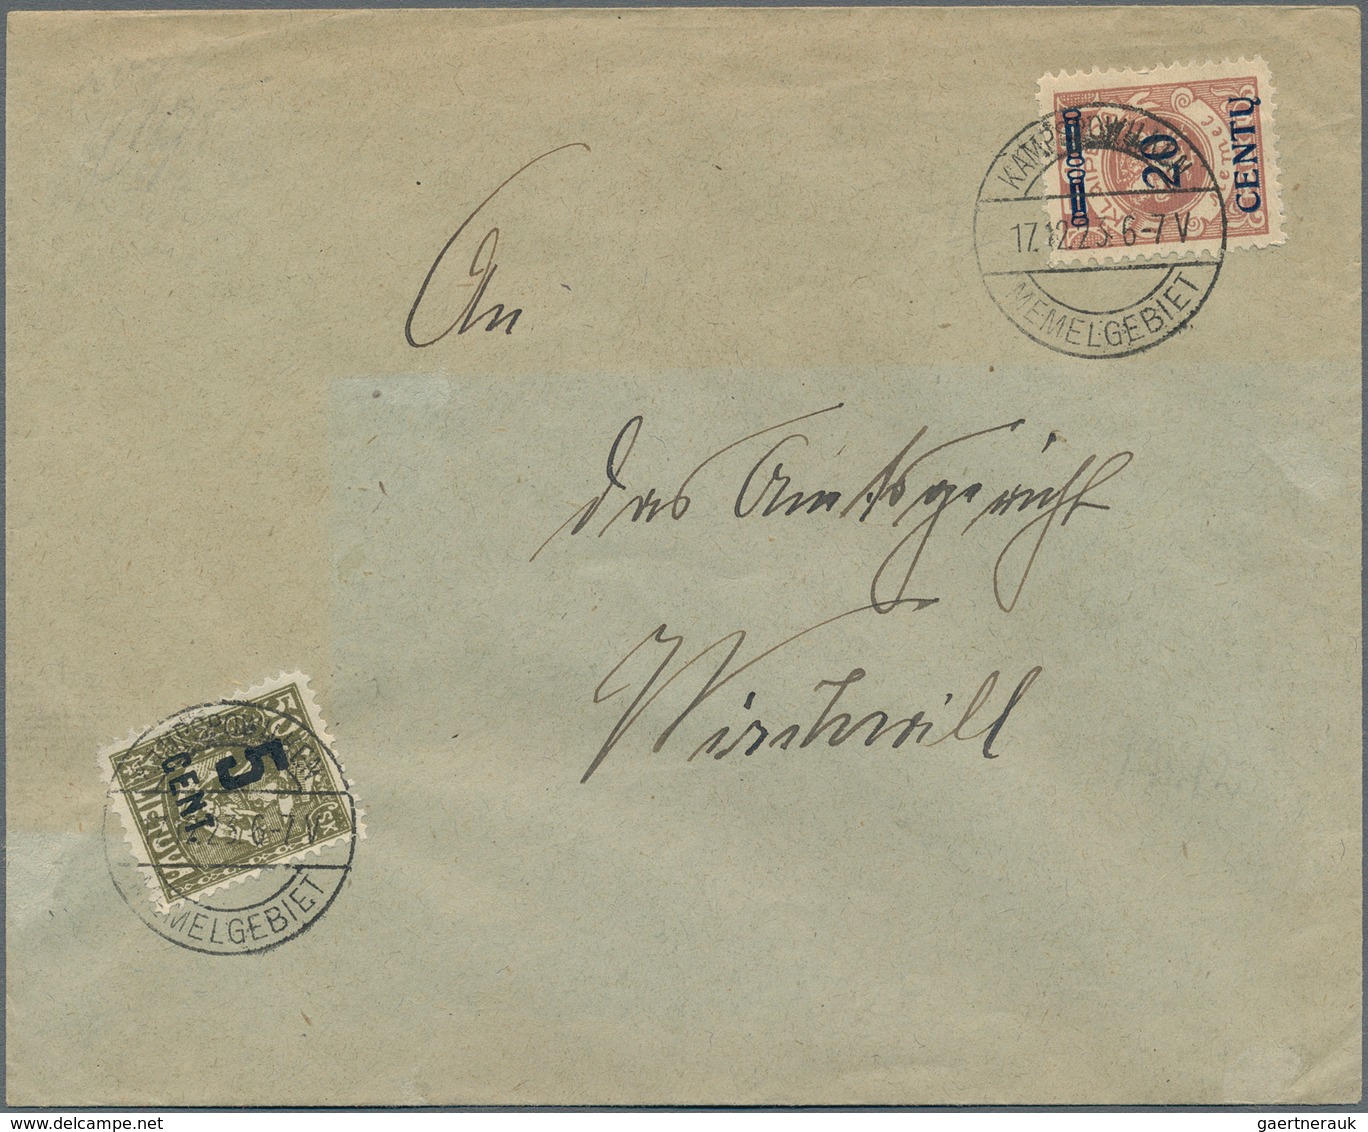 Memel: 1923/1924, Partie Mit 4 Briefen, Dabei 7-Farben-Frankatur (Mi.ex 169/180) Mit MiNr.177 U. 180 - Klaipeda 1923